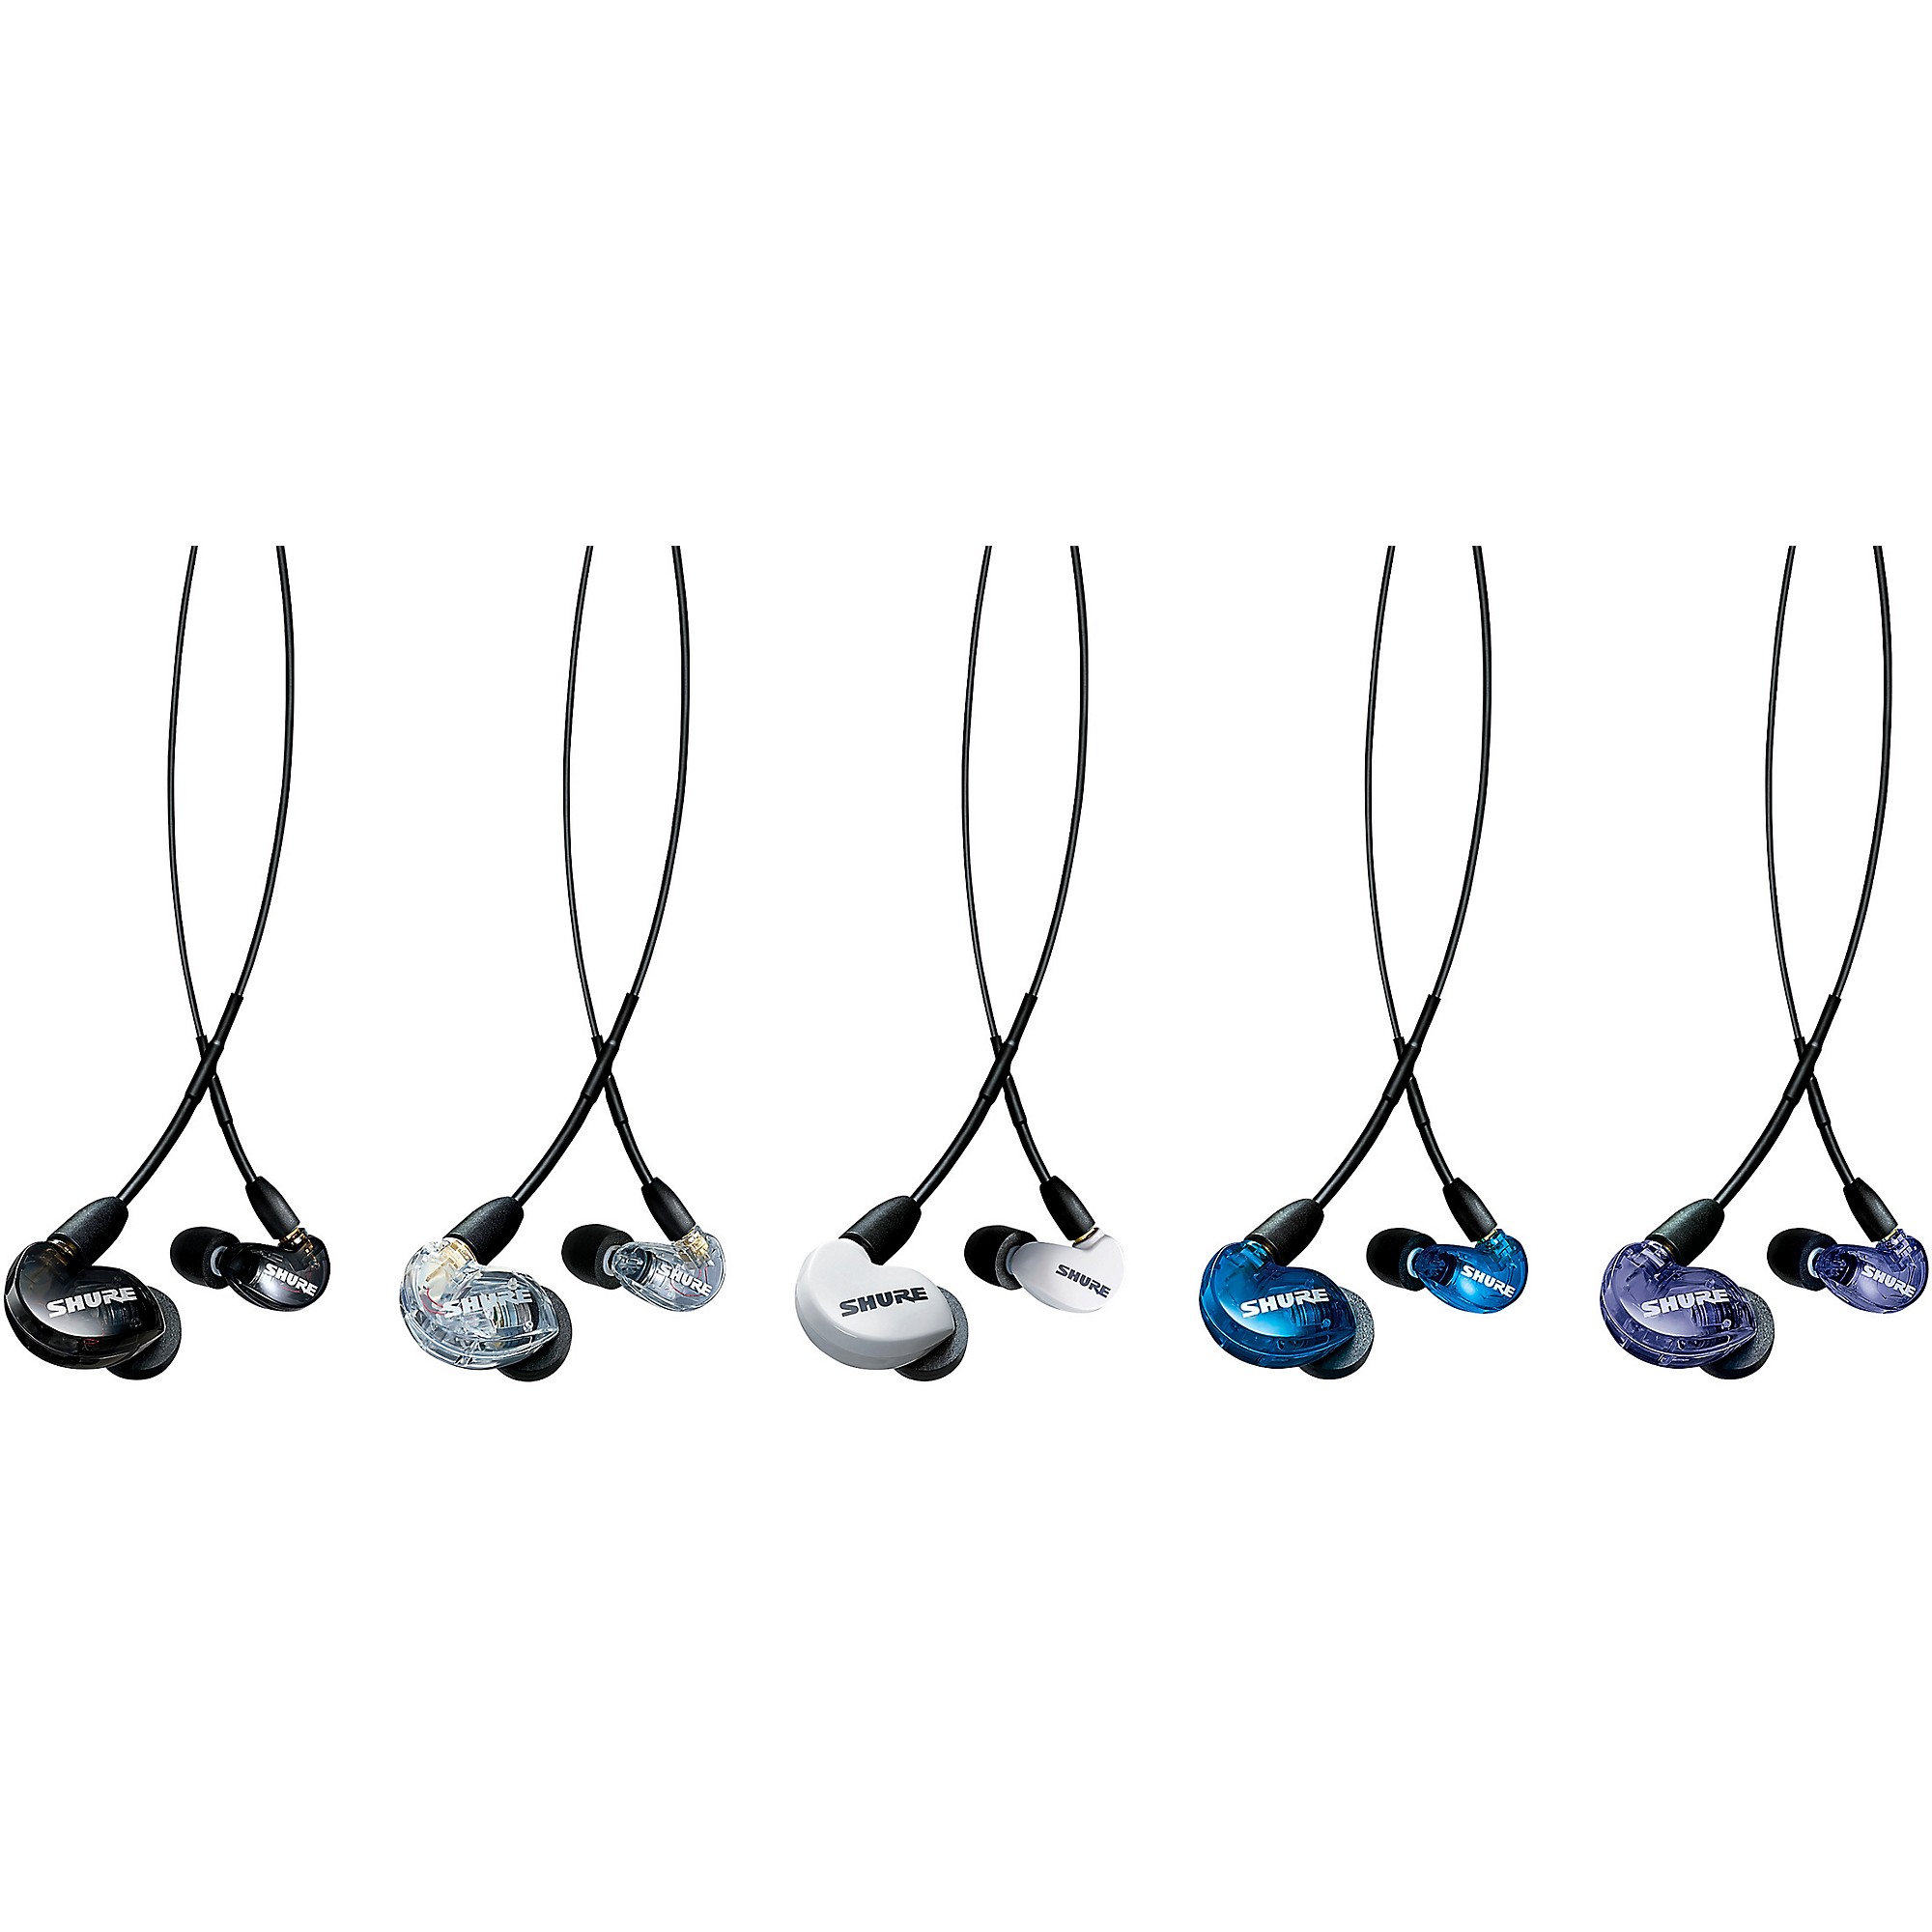 SHURE SE215 SPE In-Ear Monitor IEM Earphone Purple Special Edition wit –  AccessoryJack